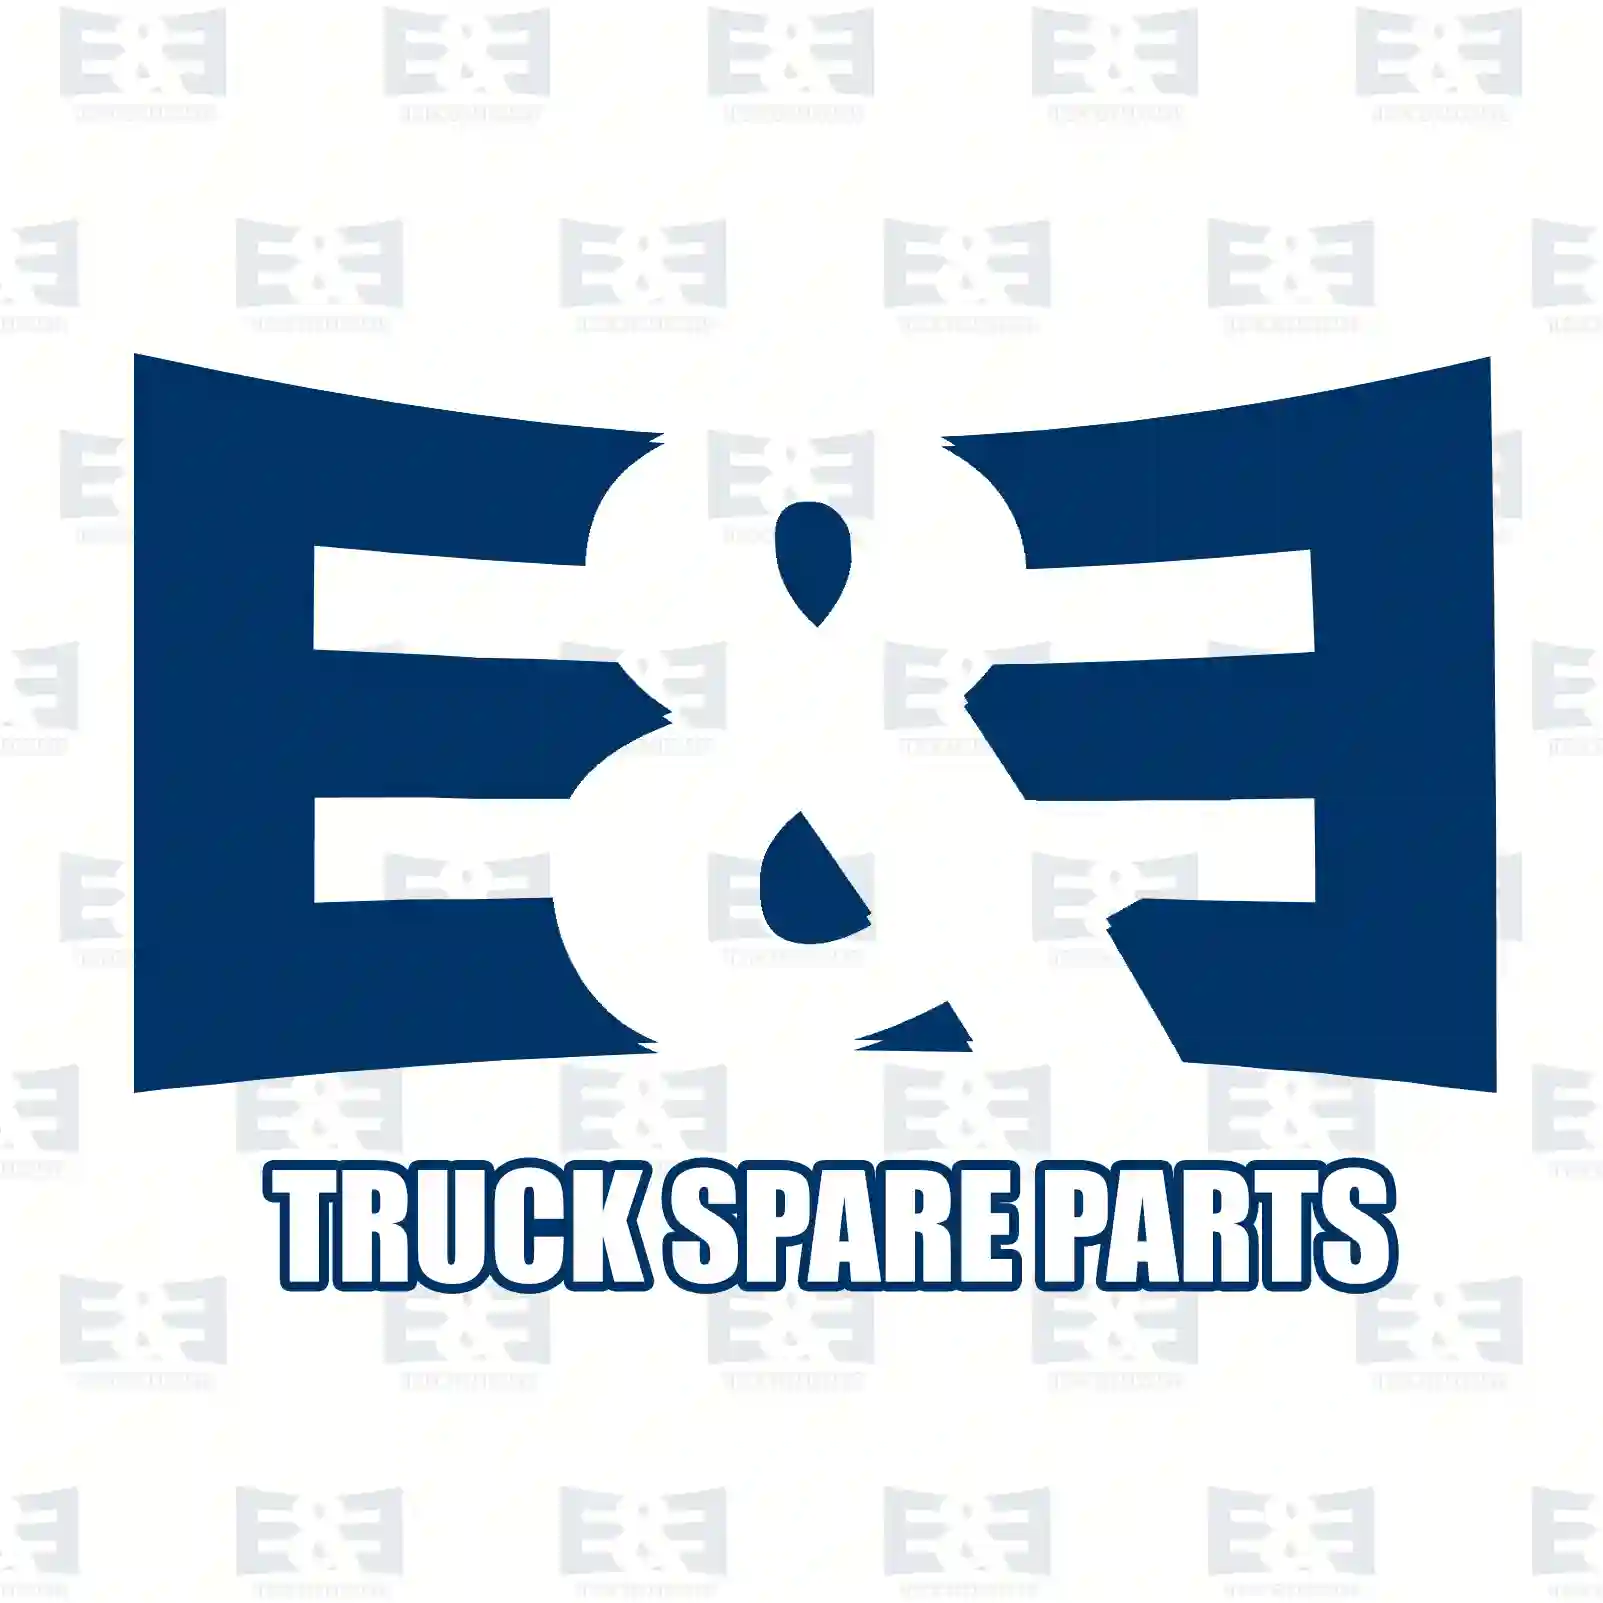 Engine mounting, rear, 2E2207679, 5010130602, , , , , ||  2E2207679 E&E Truck Spare Parts | Truck Spare Parts, Auotomotive Spare Parts Engine mounting, rear, 2E2207679, 5010130602, , , , , ||  2E2207679 E&E Truck Spare Parts | Truck Spare Parts, Auotomotive Spare Parts